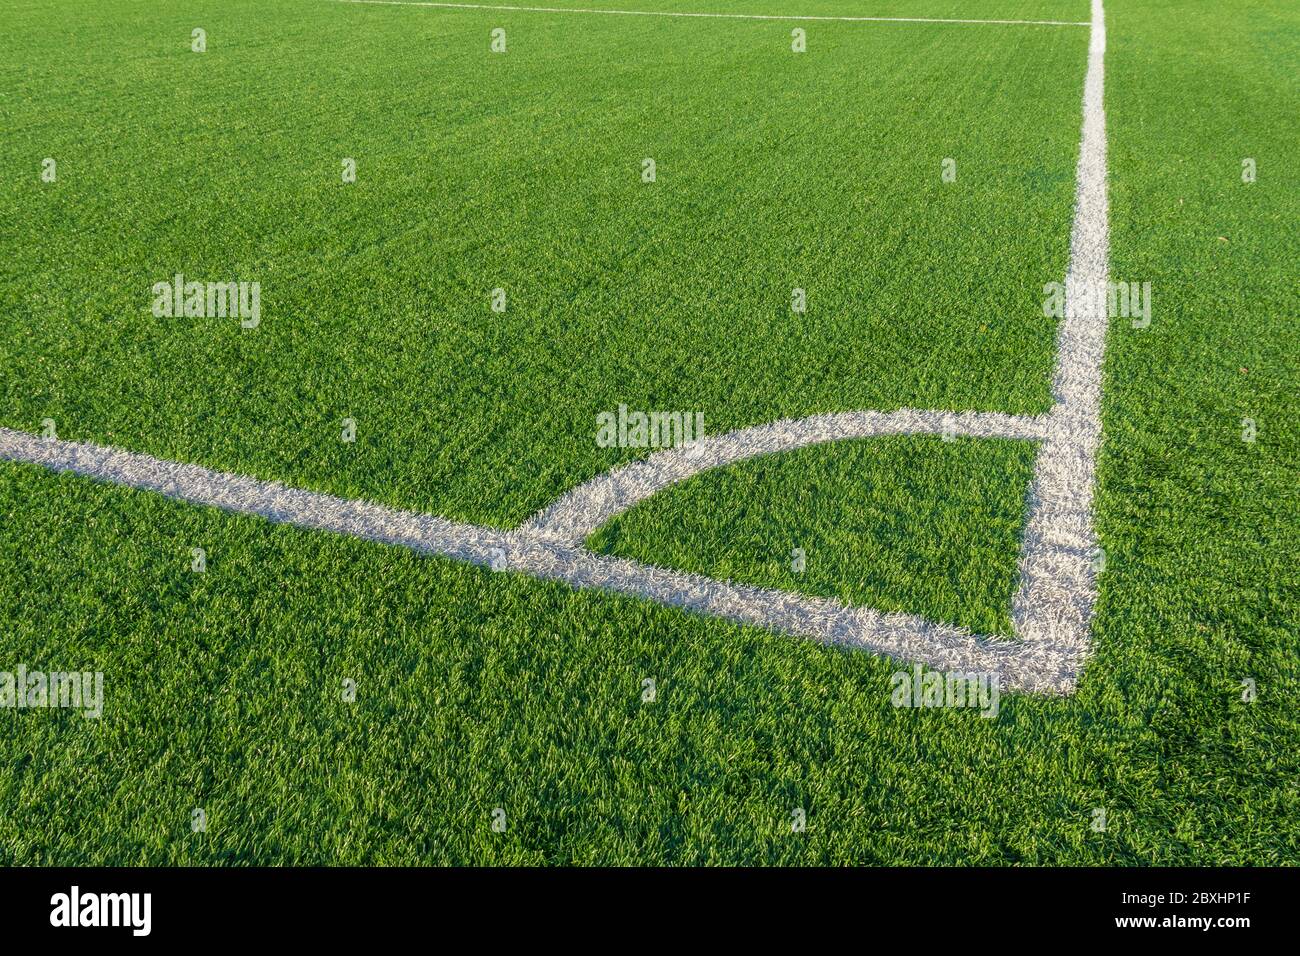 football grass ground